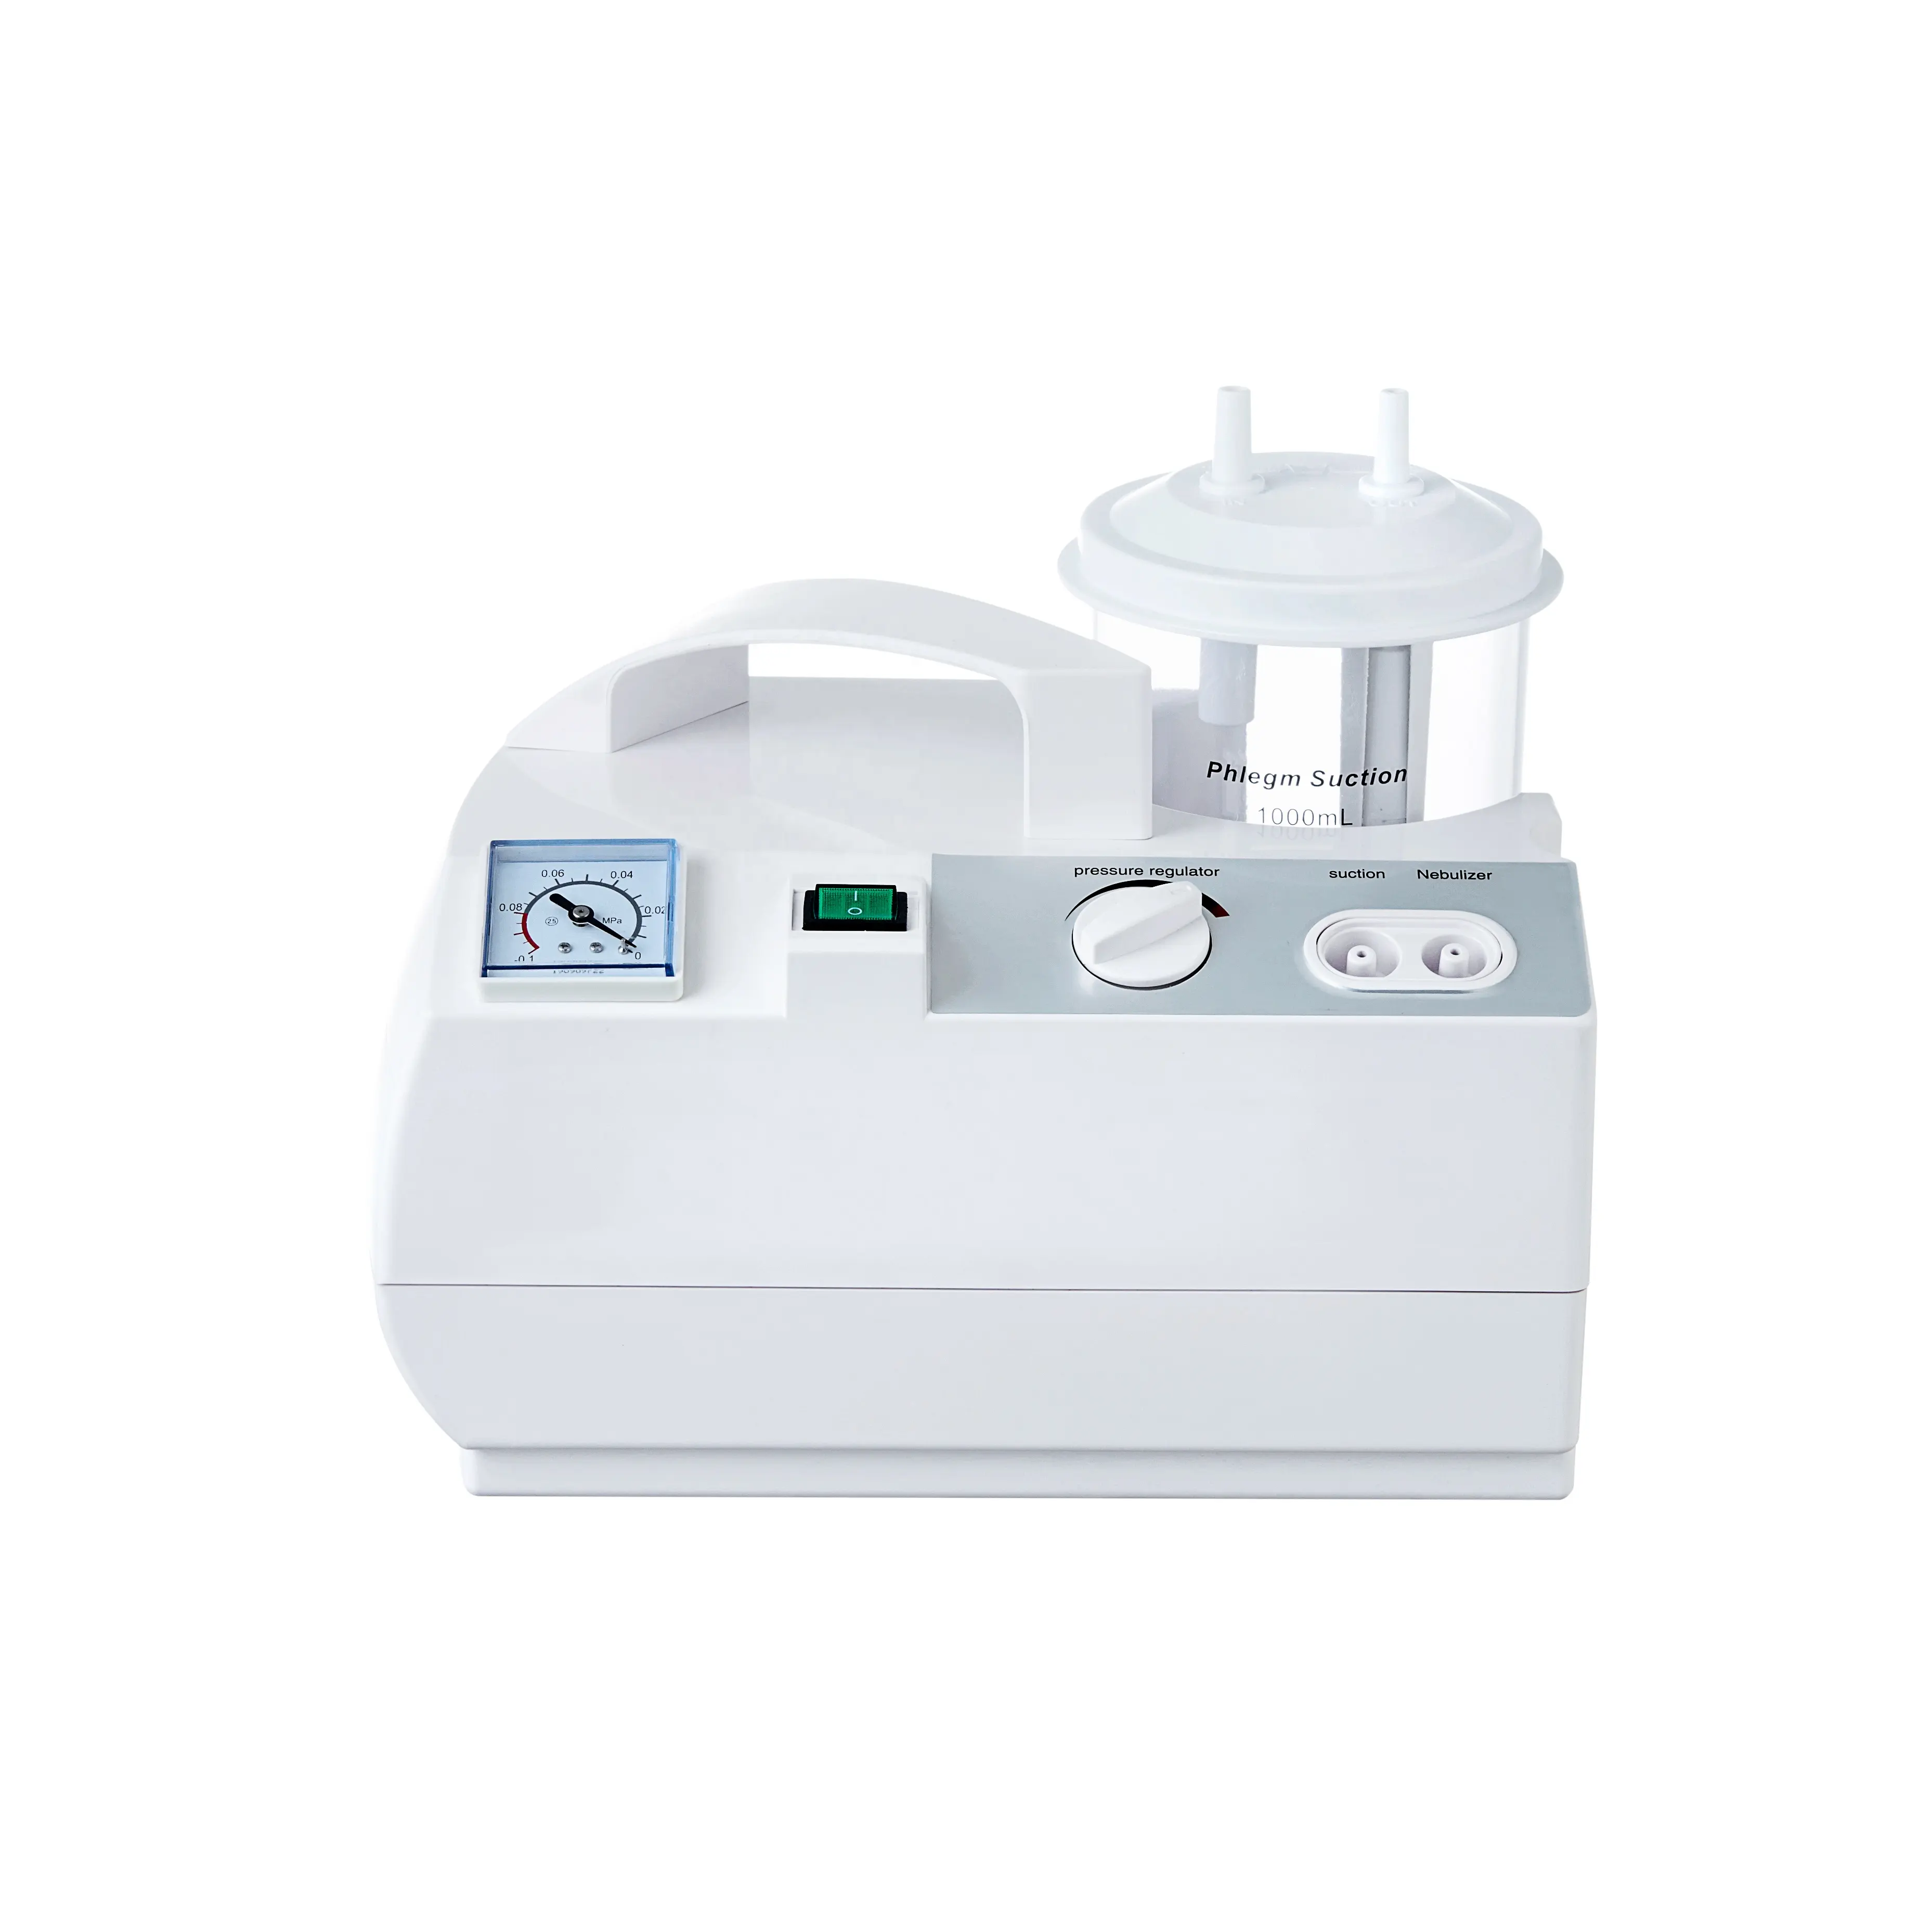 Stronghealth unidade de sucção dupla, inseto-aspirador inccional para asma, nebulizador e máquina de nebulização